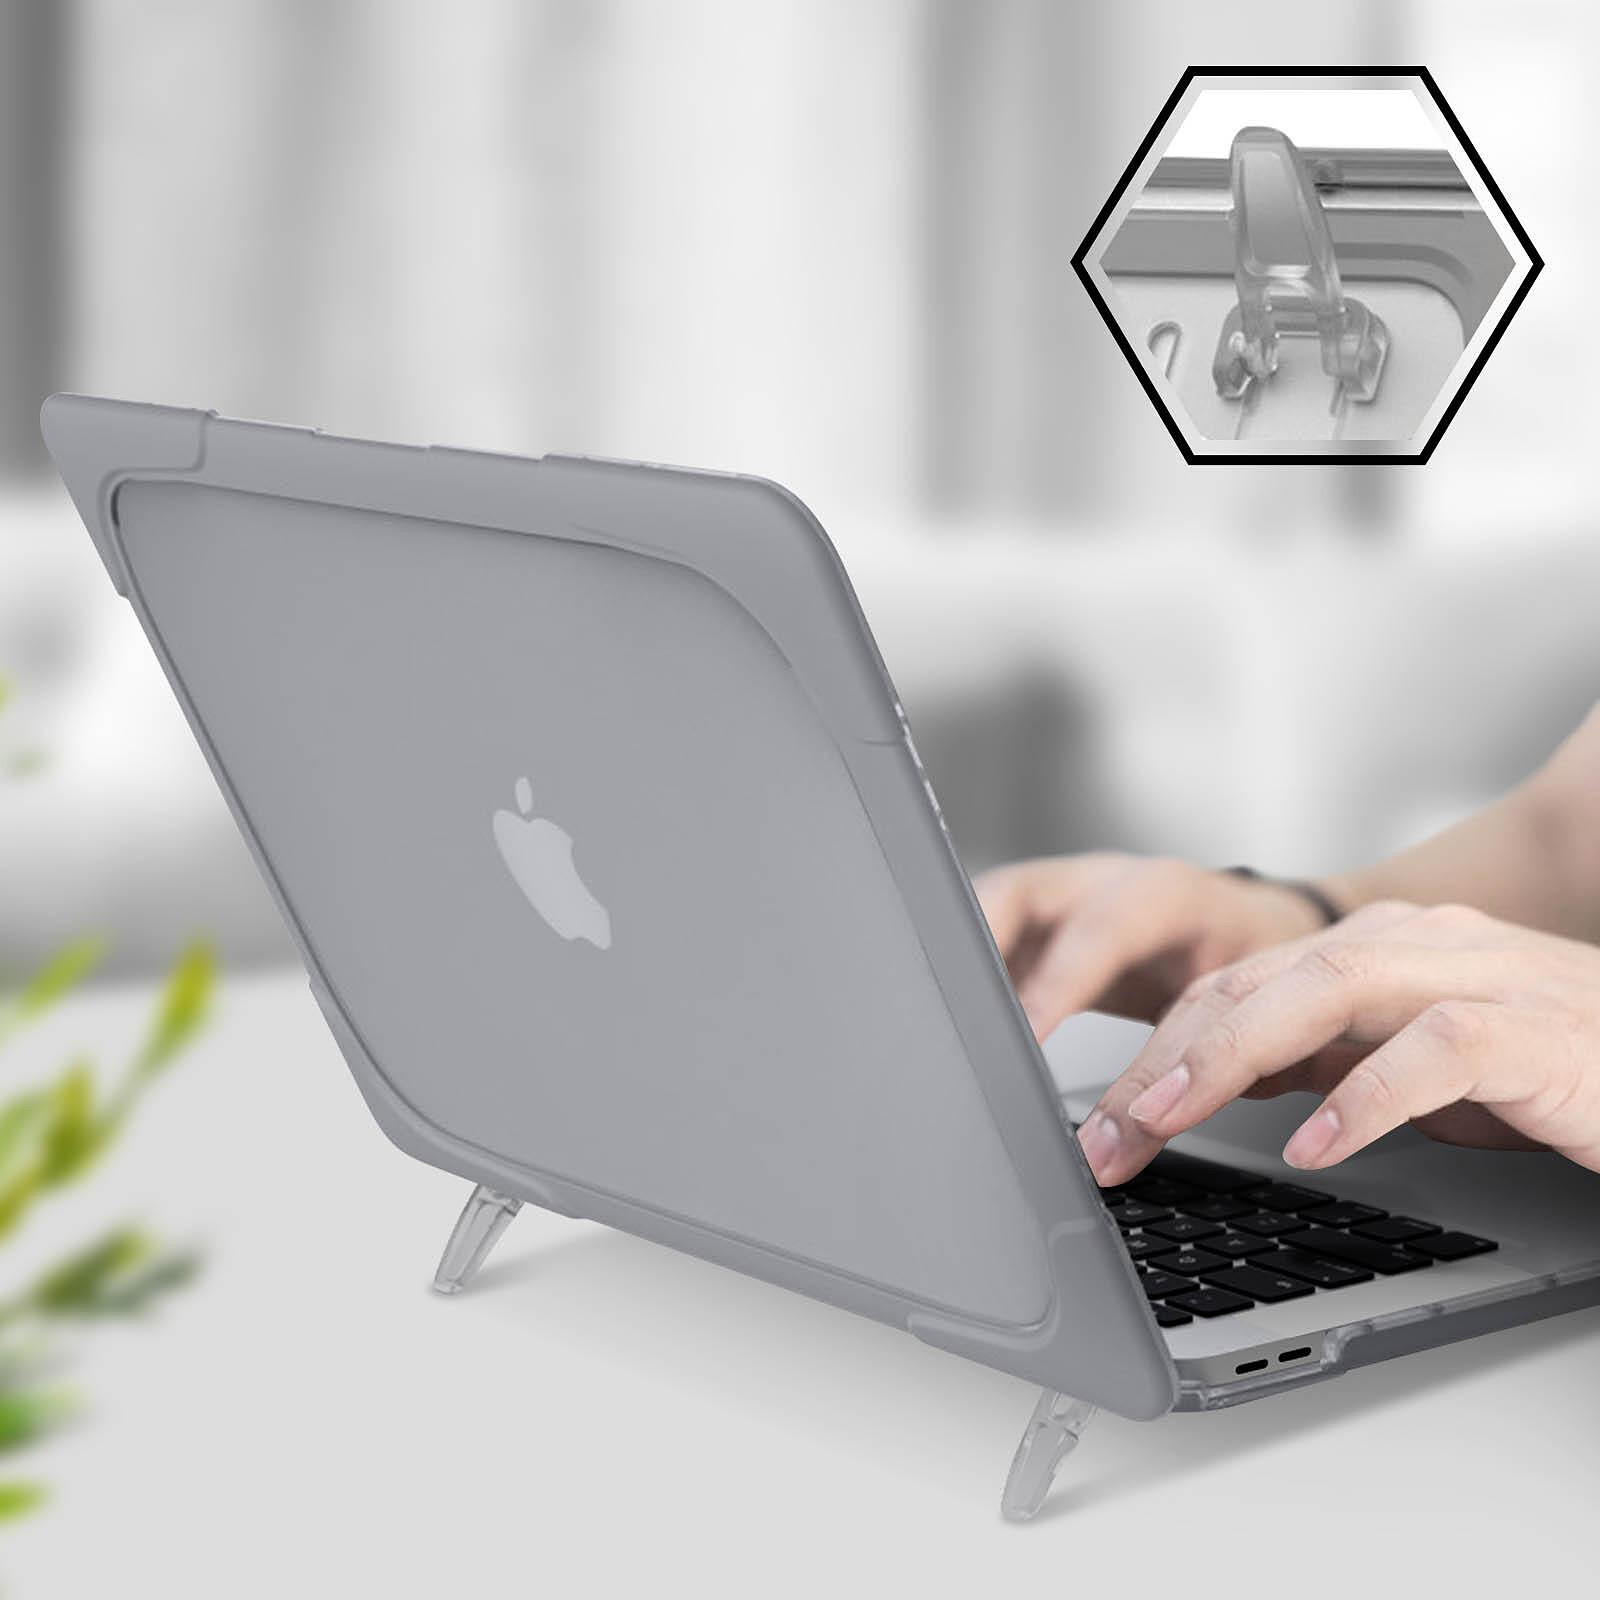 I INESEON Coque MacBook Pro 16 Pouces Plastique Rigide Étui pour 2019 MacBook Pro 16 avec Touch Bar Modèle A2141 Noir 